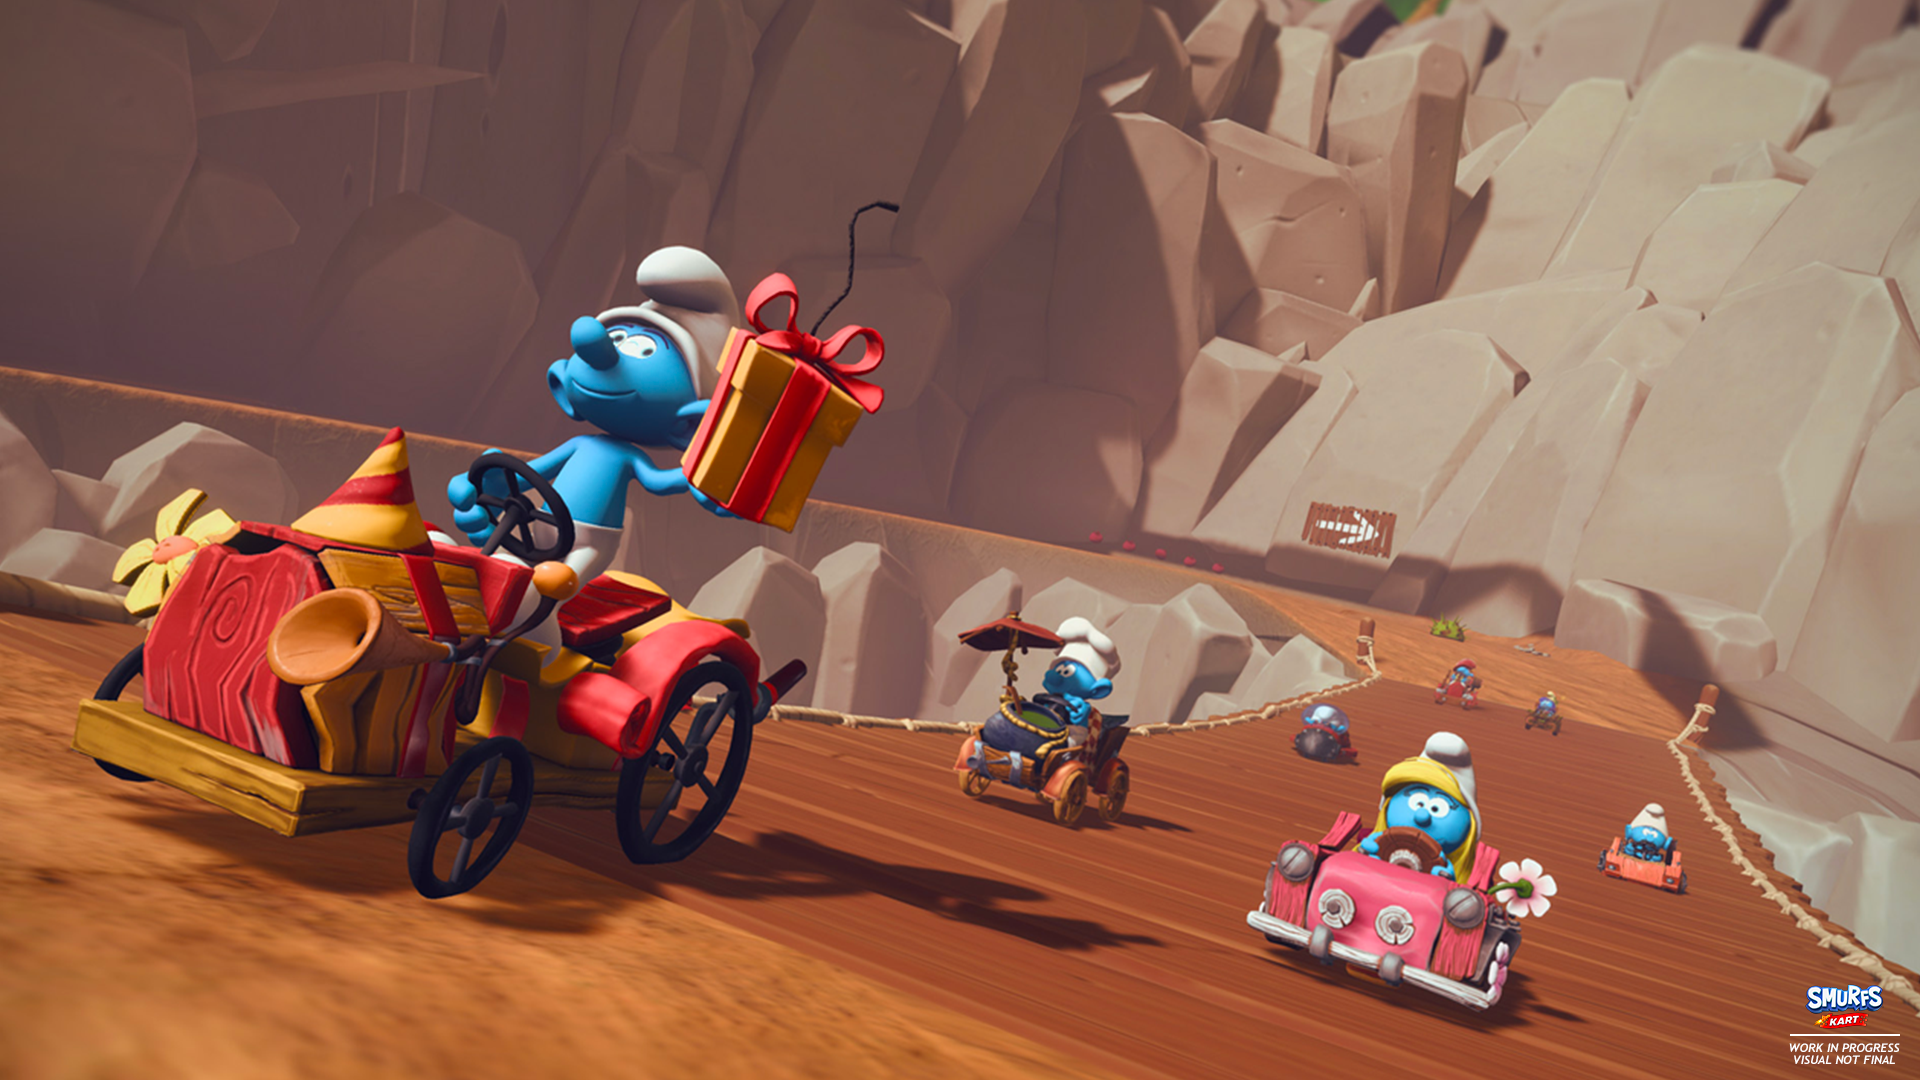 Immagine di Smurfs Kart è il videogioco sui Puffi che (forse) avete sempre desiderato senza saperlo